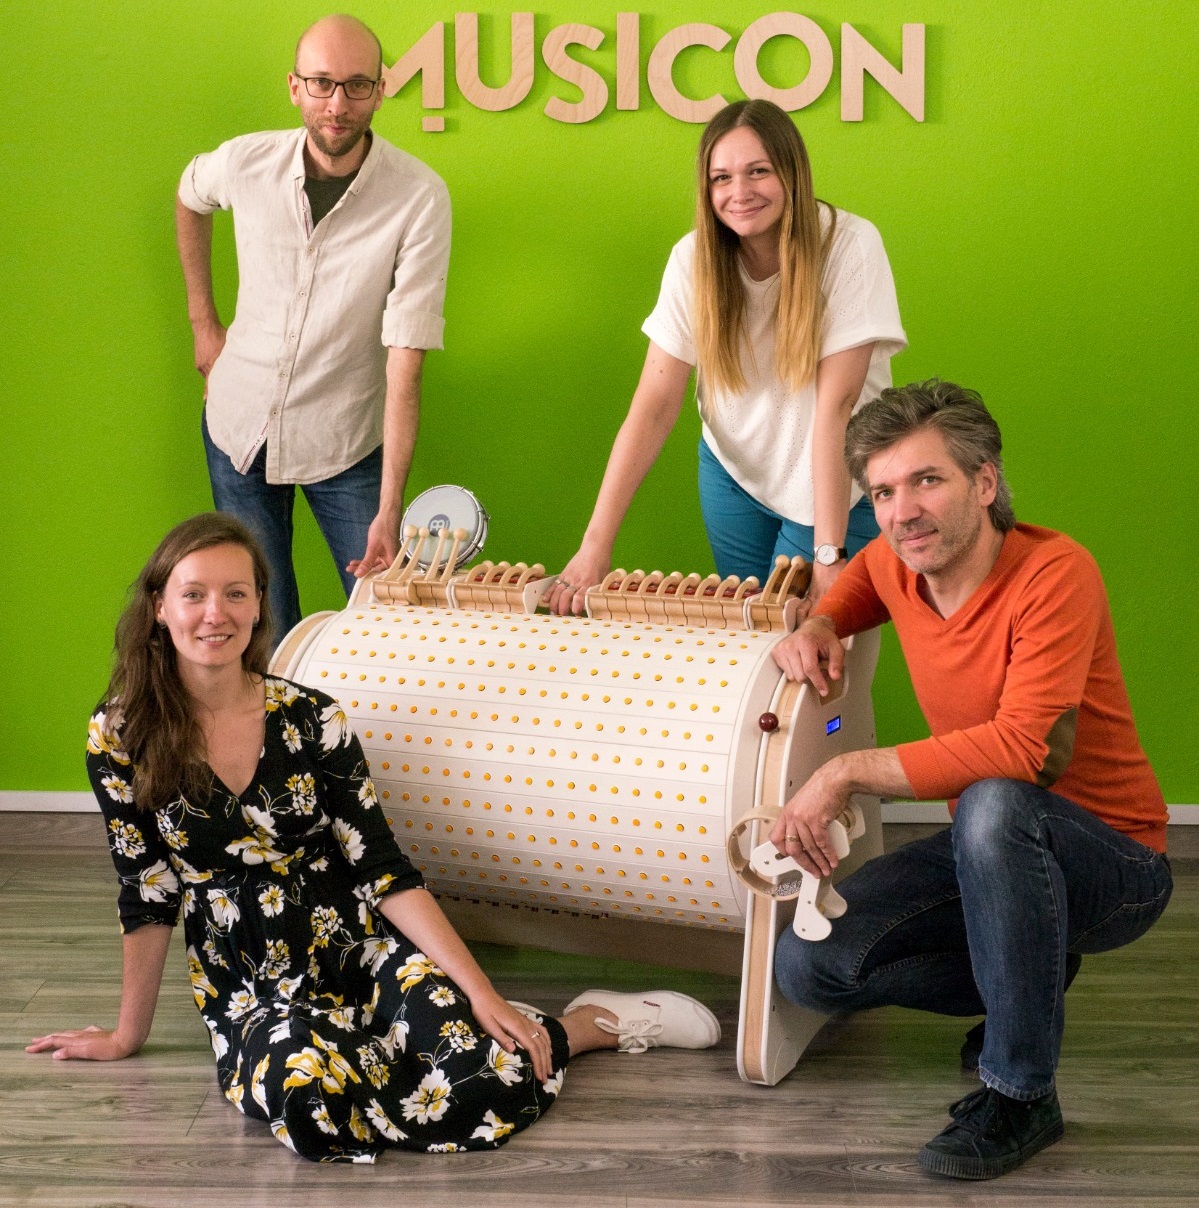 Na zdjęciu wokół urządzenia Musicon: Kamil Laszuk, Ida Laszuk, Jakub Kozik, Natalia Komar-Piątyszek. Za nimi napis: Musicon